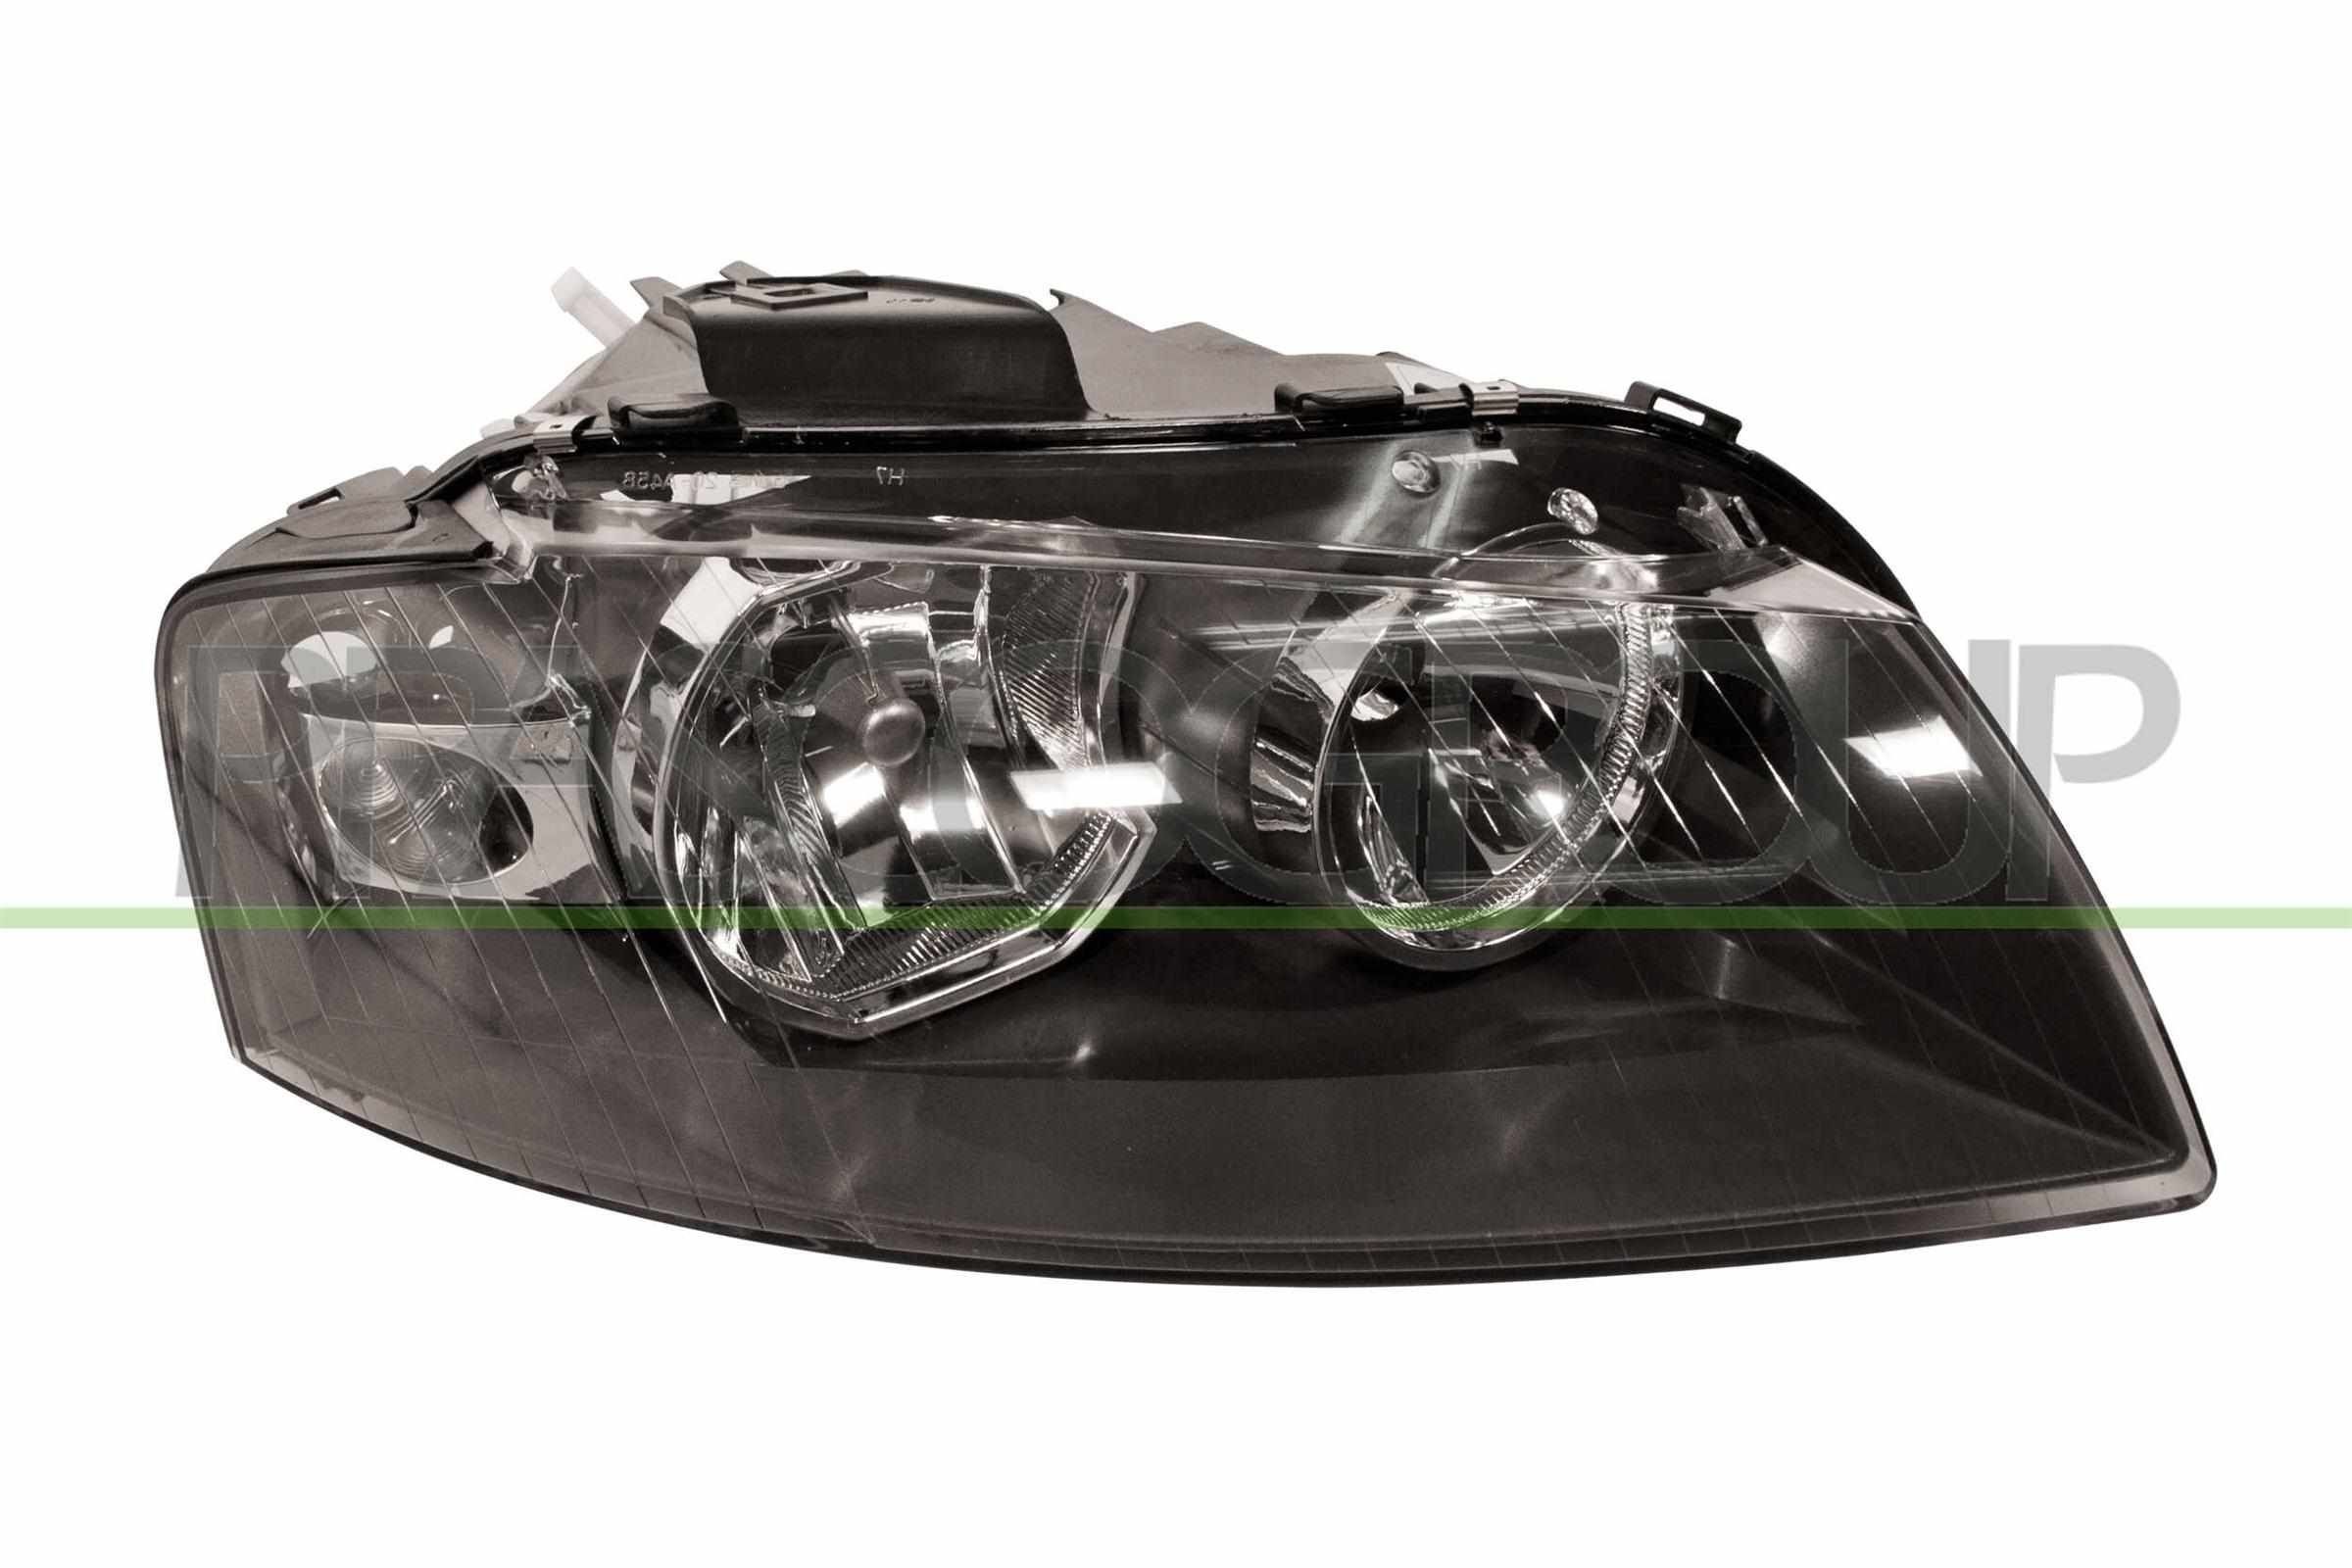 Scheinwerfer für Audi A3 8P LED und Xenon kaufen ▷ AUTODOC Online-Shop